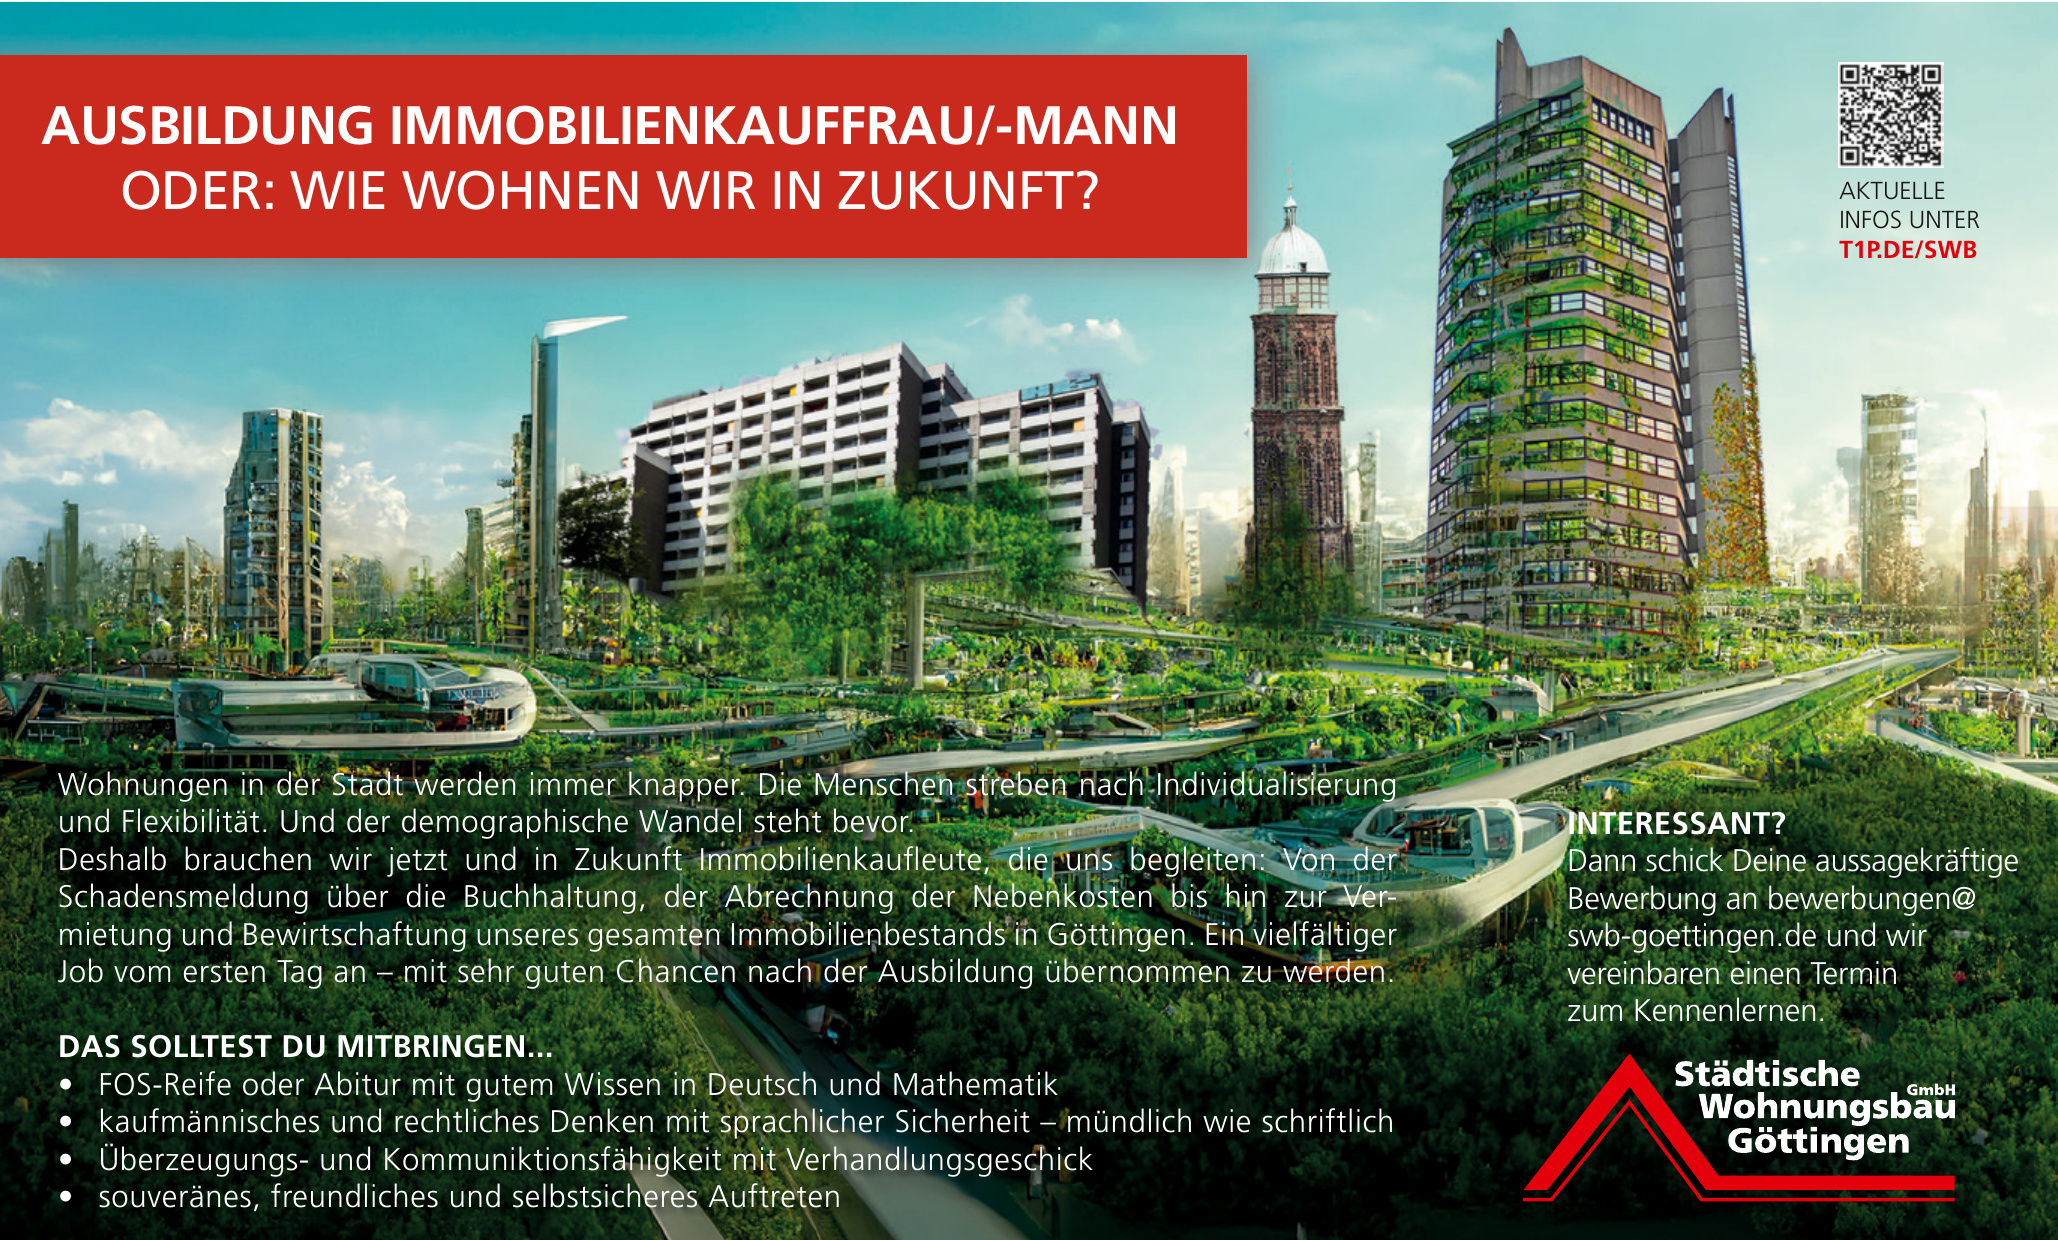 Städtische Wohnungsbau Göttingen GmbH